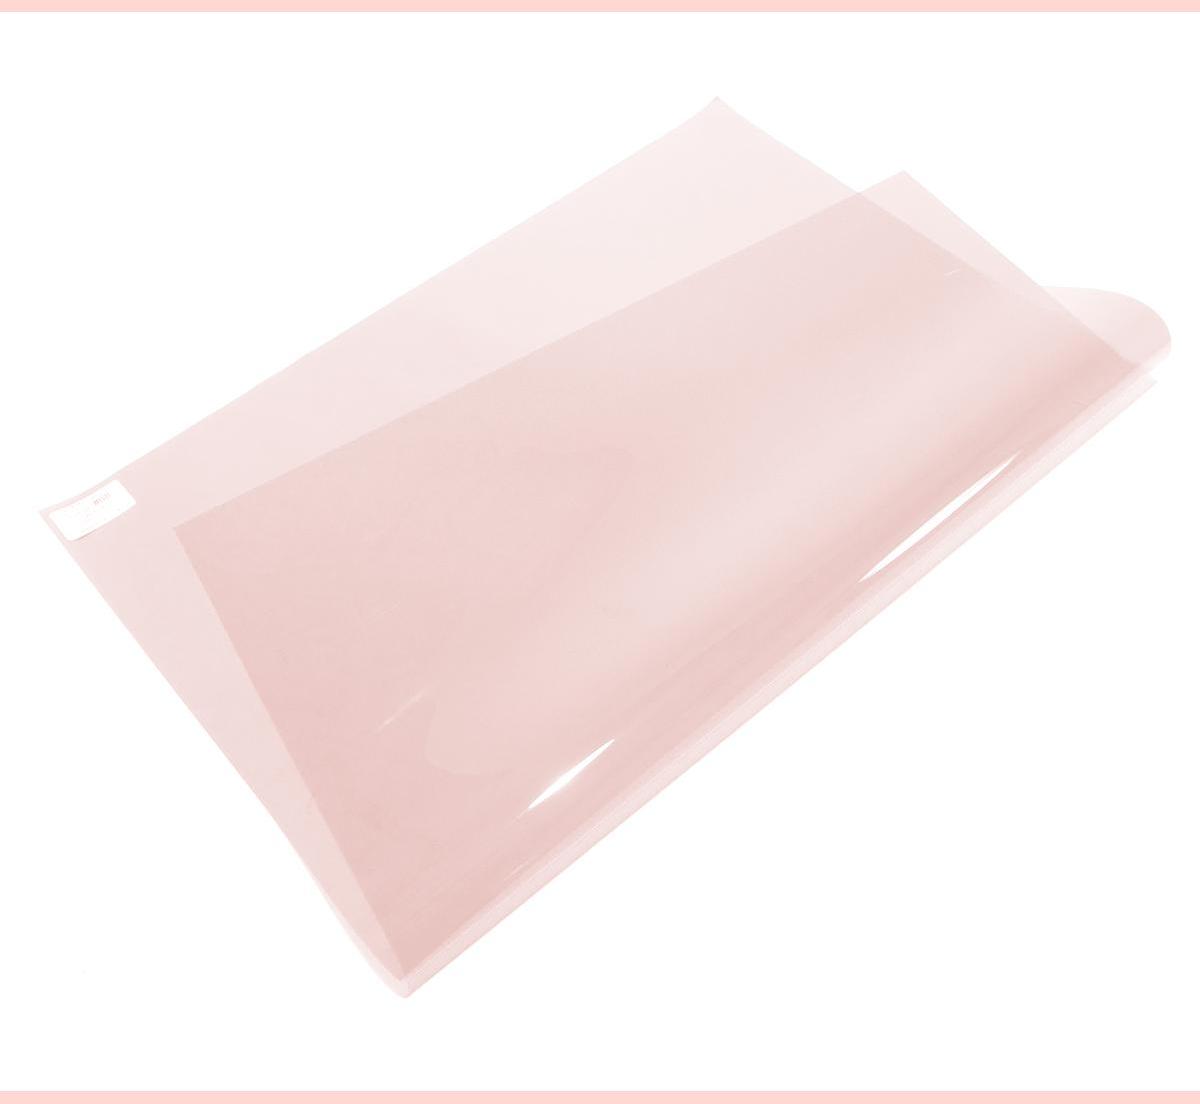 An image of #05 Rose Tint Lighting Gel Sheet